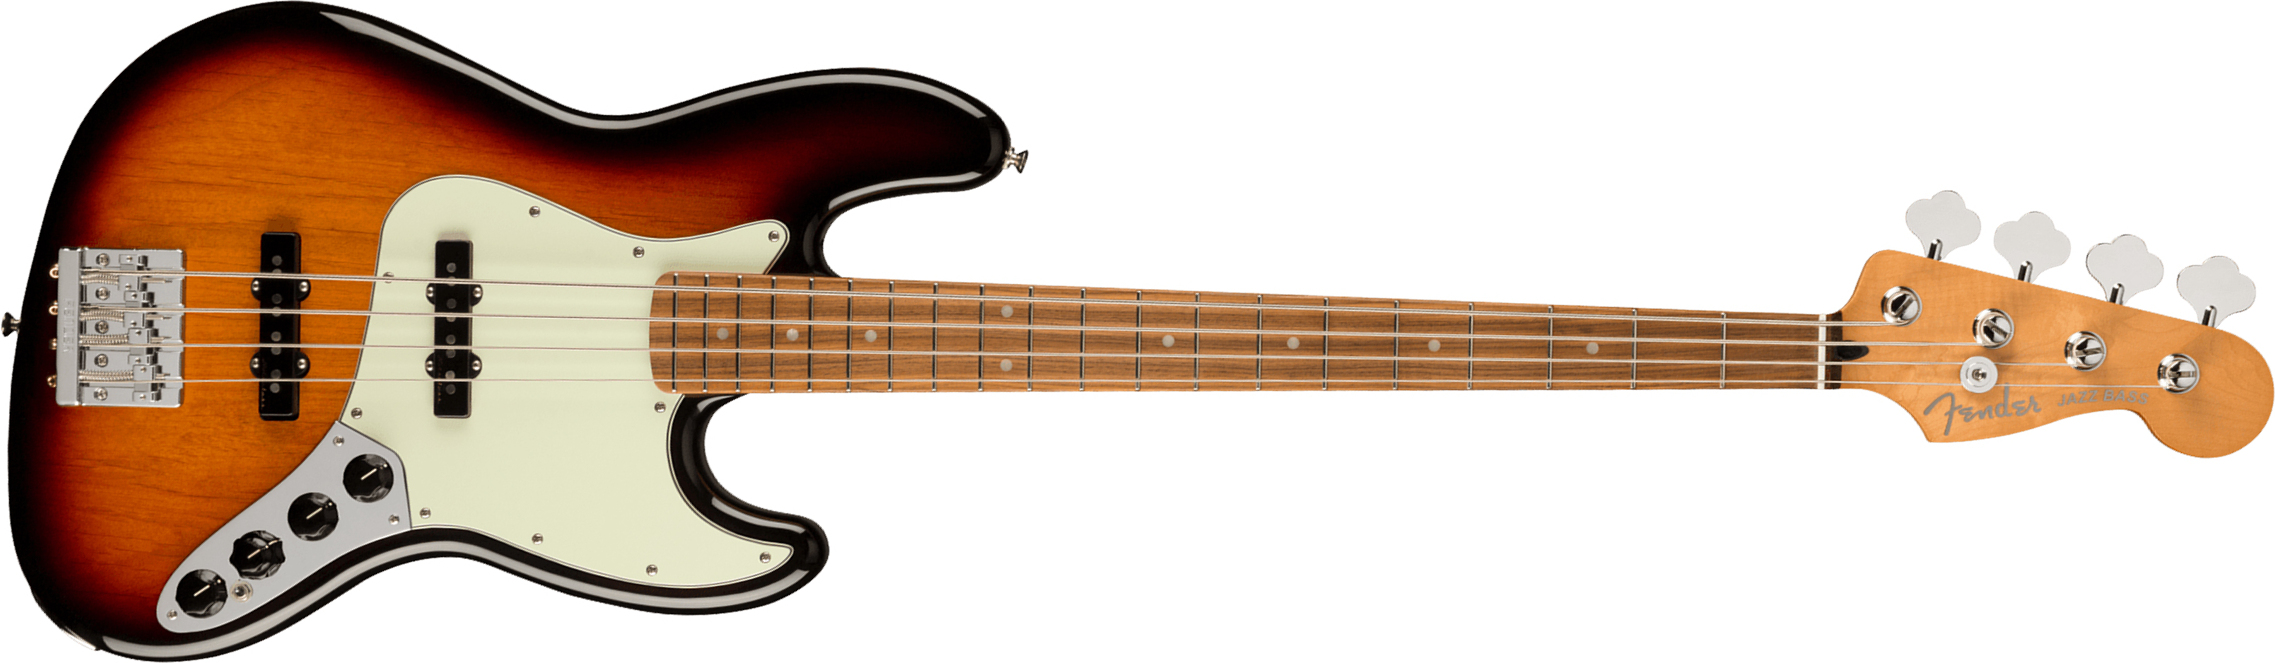 Fender Jazz Bass Player Plus Mex Active Pf - 3-color Sunburst - Basse Électrique Solid Body - Main picture